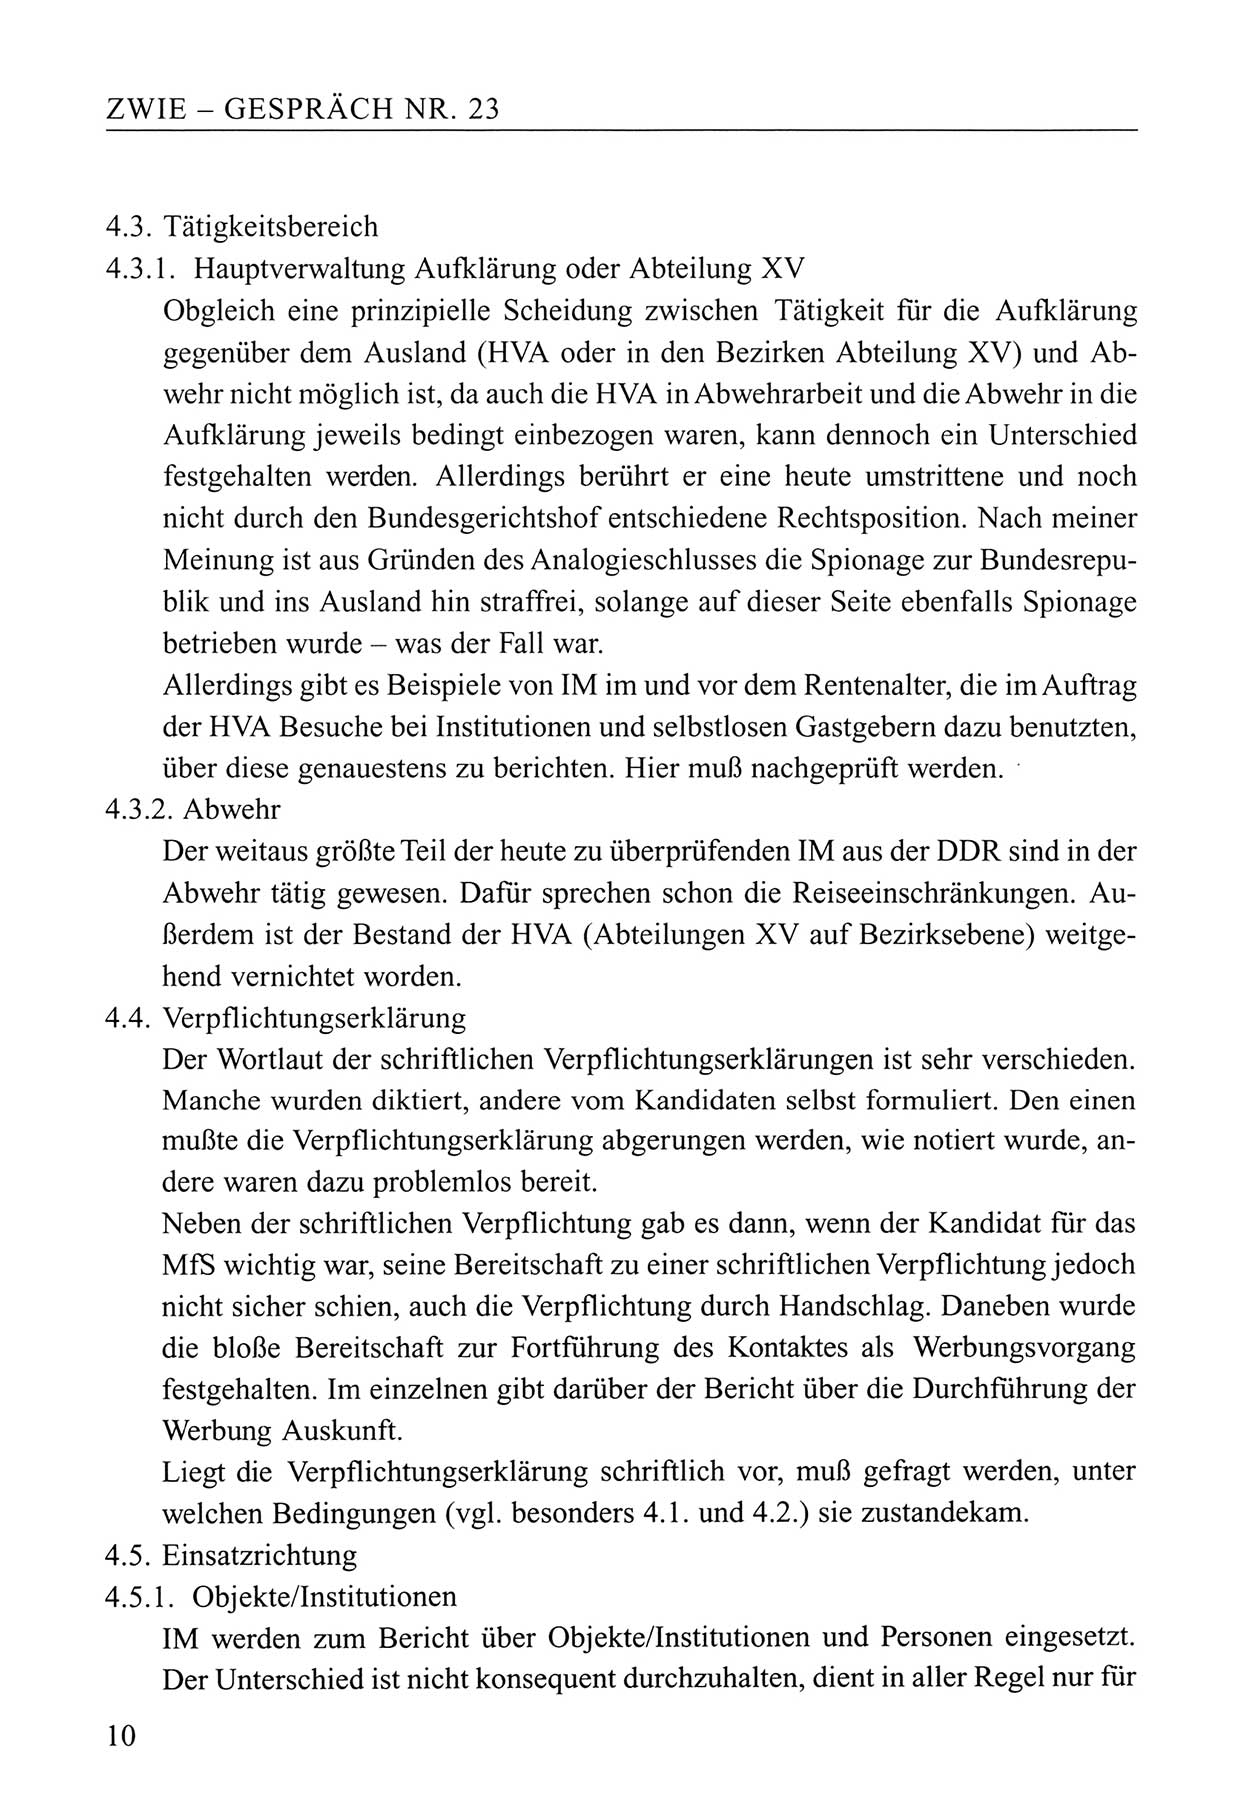 Zwie-Gespräch, Beiträge zum Umgang mit der Staatssicherheits-Vergangenheit [Deutsche Demokratische Republik (DDR)], Ausgabe Nr. 23, Berlin 1994, Seite 10 (Zwie-Gespr. Ausg. 23 1994, S. 10)